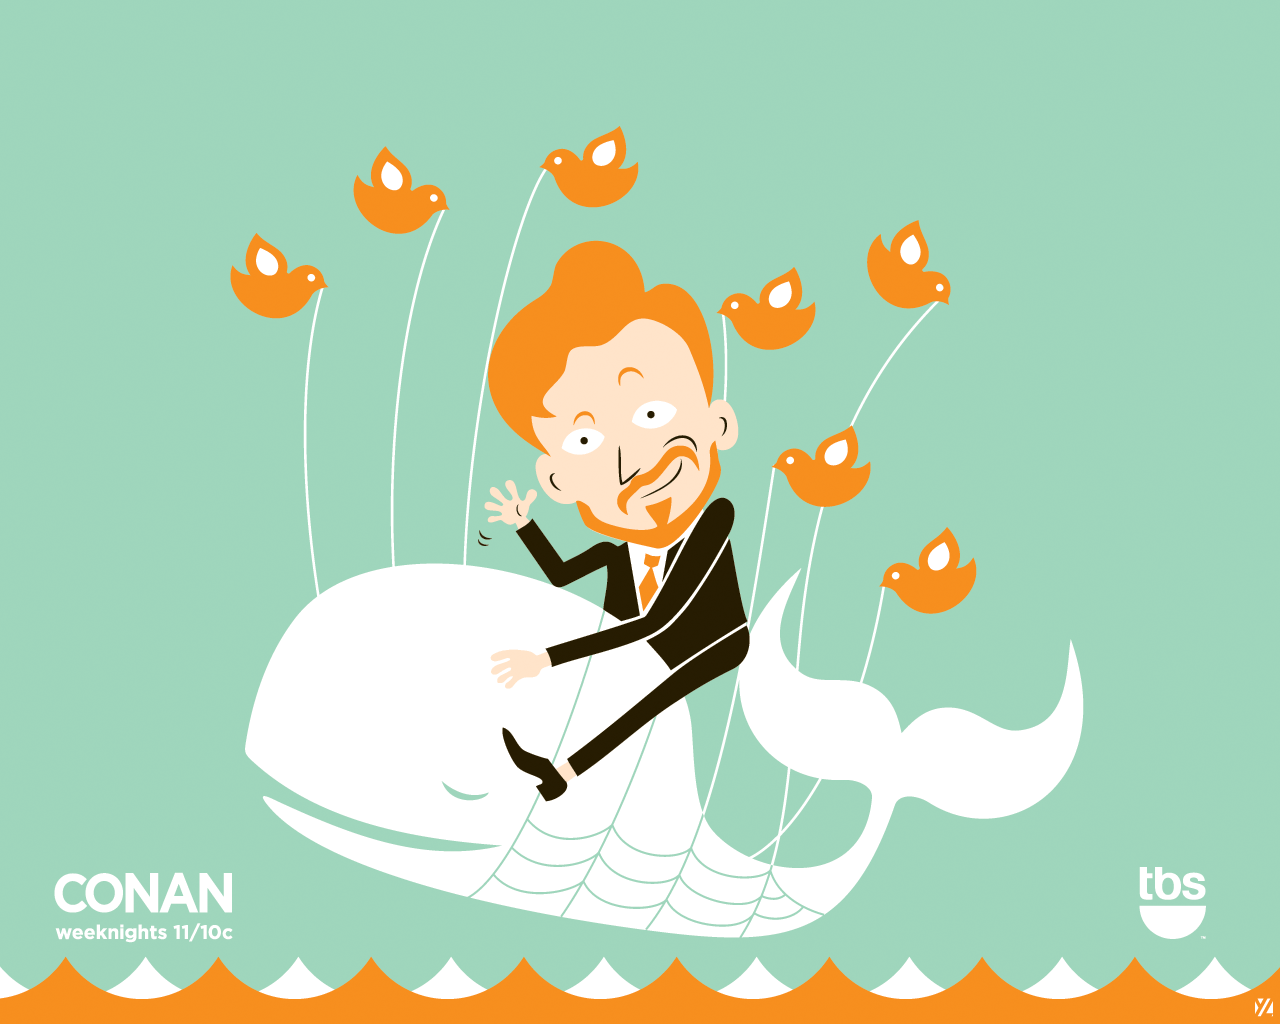 Conan rides the Fail Whale as created by artist Yiying Lu